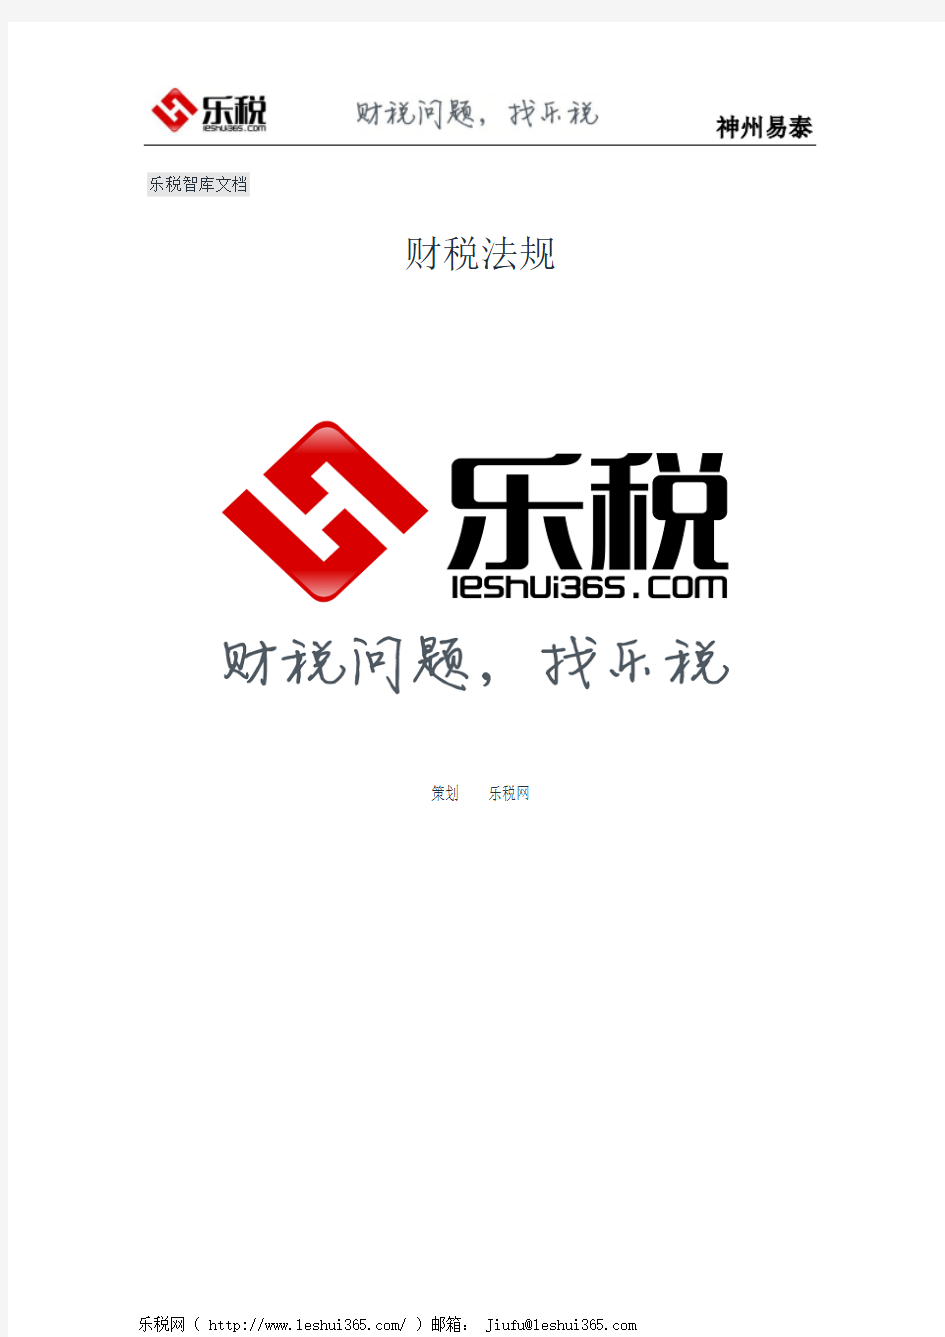 重庆市财政局关于印发《重庆市市级预算单位公务卡管理暂行办法》的通知